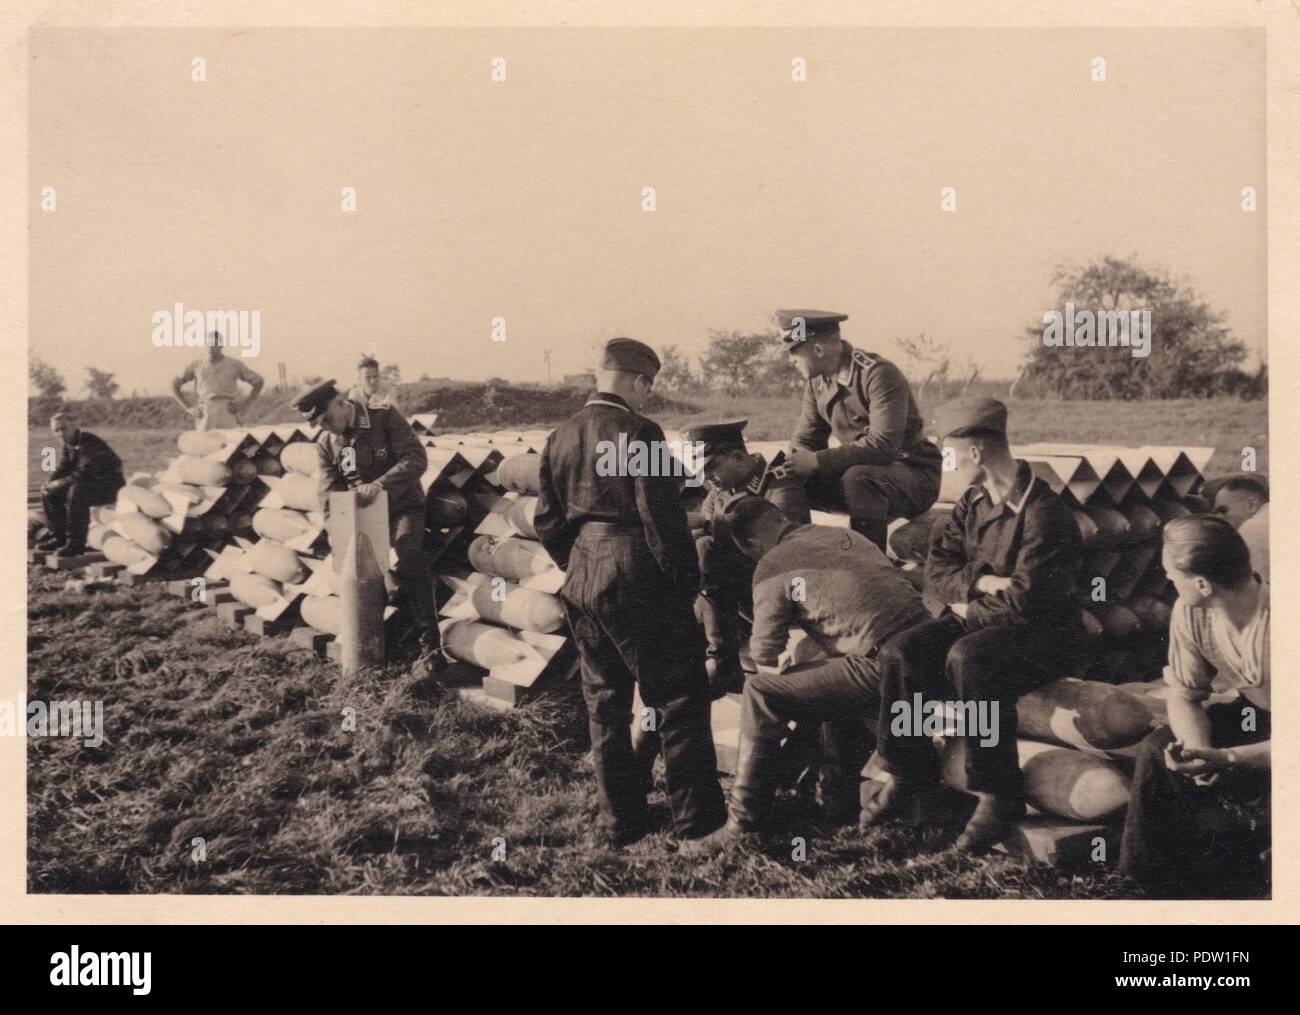 Bild aus dem Fotoalbum von Oberfeldwebel Karl gendner von 1. Staffel, Kampfgeschwader 40:Untertitel als 'Bombe dump Geibelstadt, Oktober 1938". Giebelstadt Airfield war die Basis des 8./KG 355, mit denen Gendner zu dieser Zeit serviert. Stockfoto